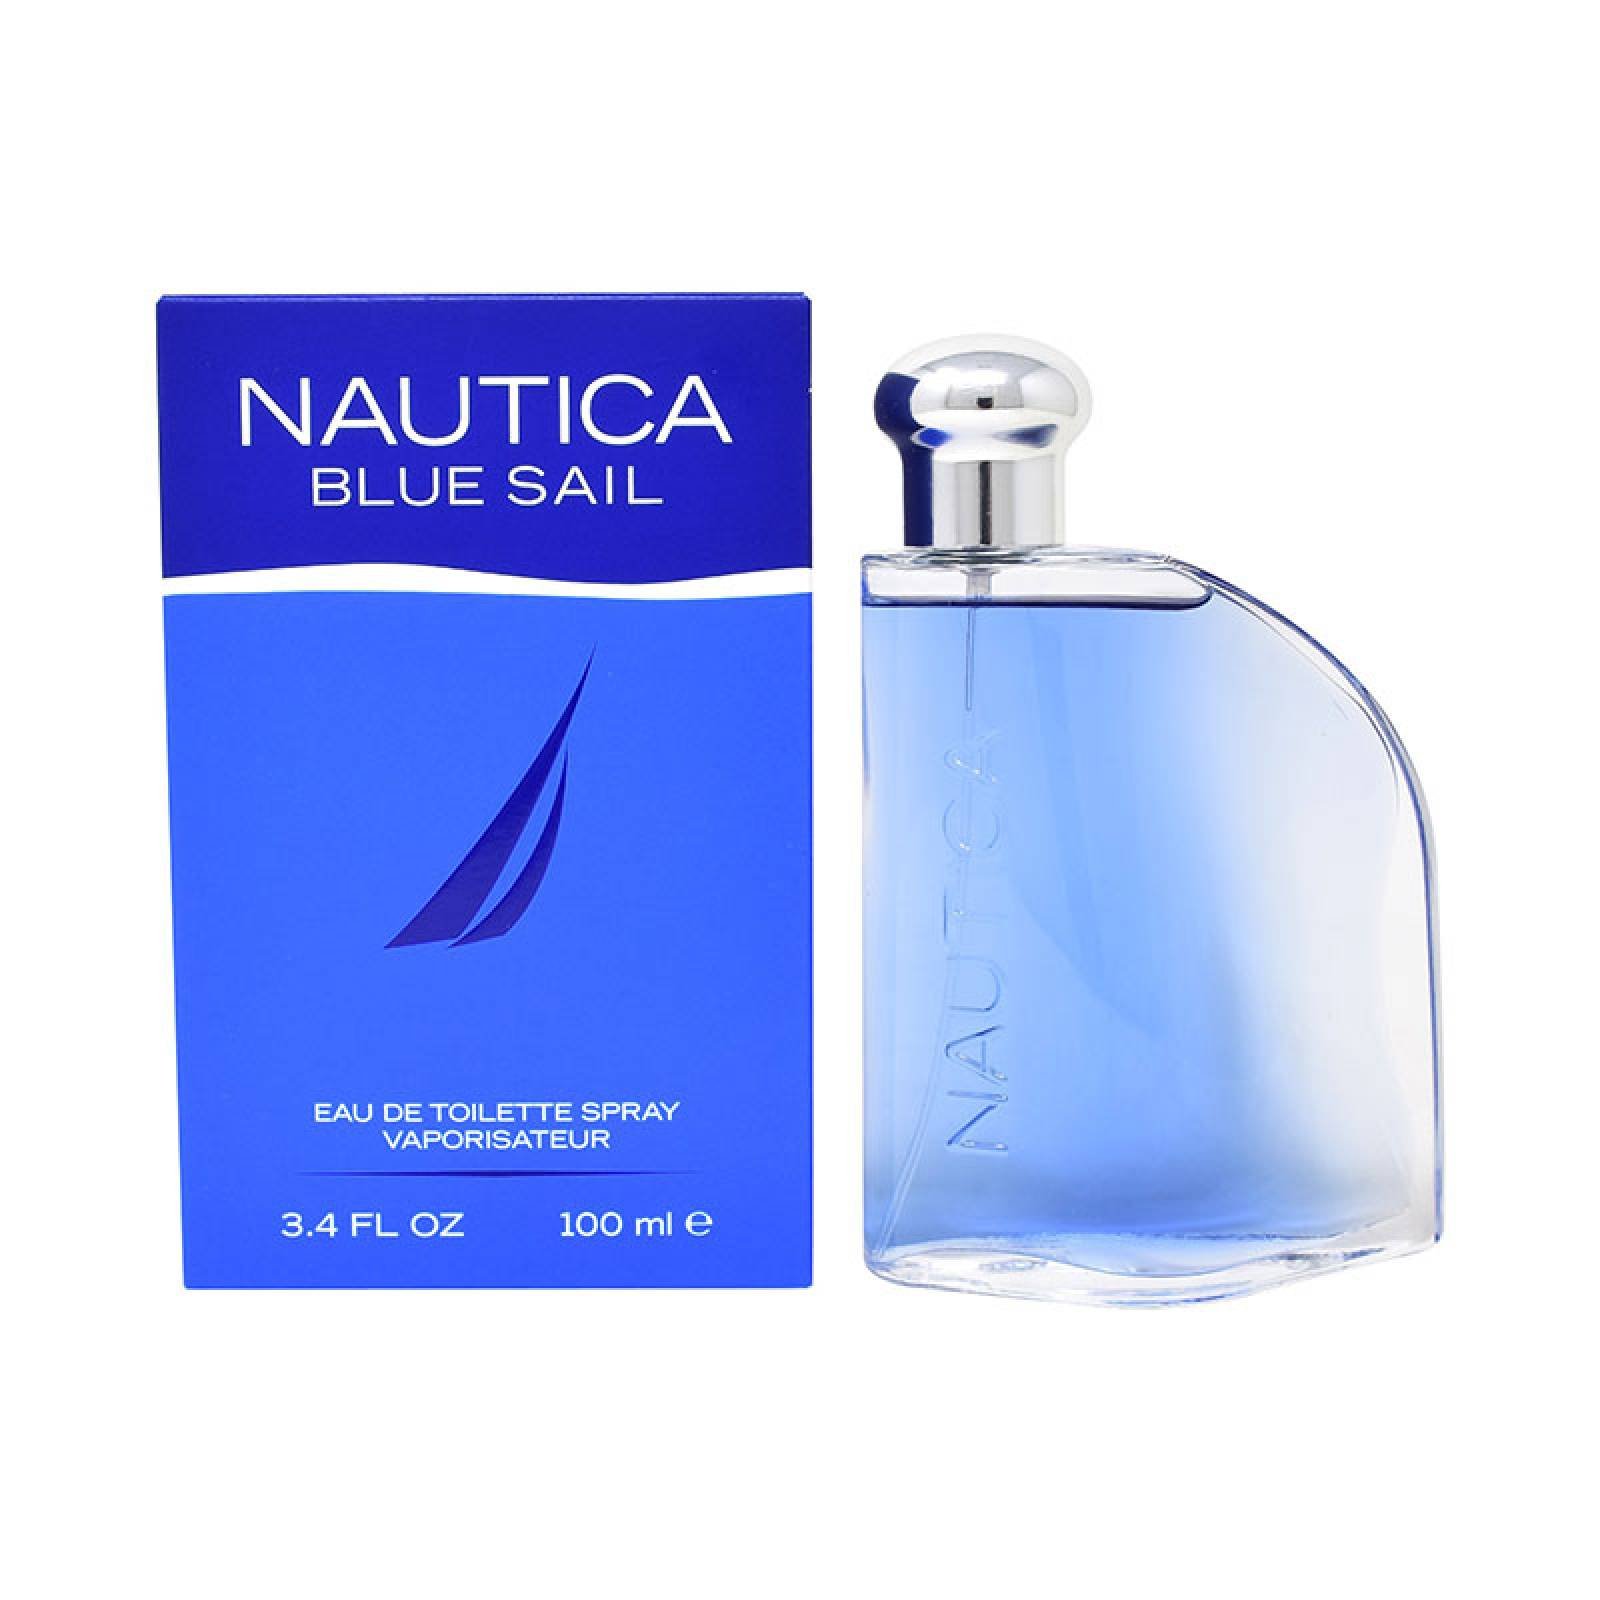 Nautica Blue Sail 100 ml Edt Spray de Nautica